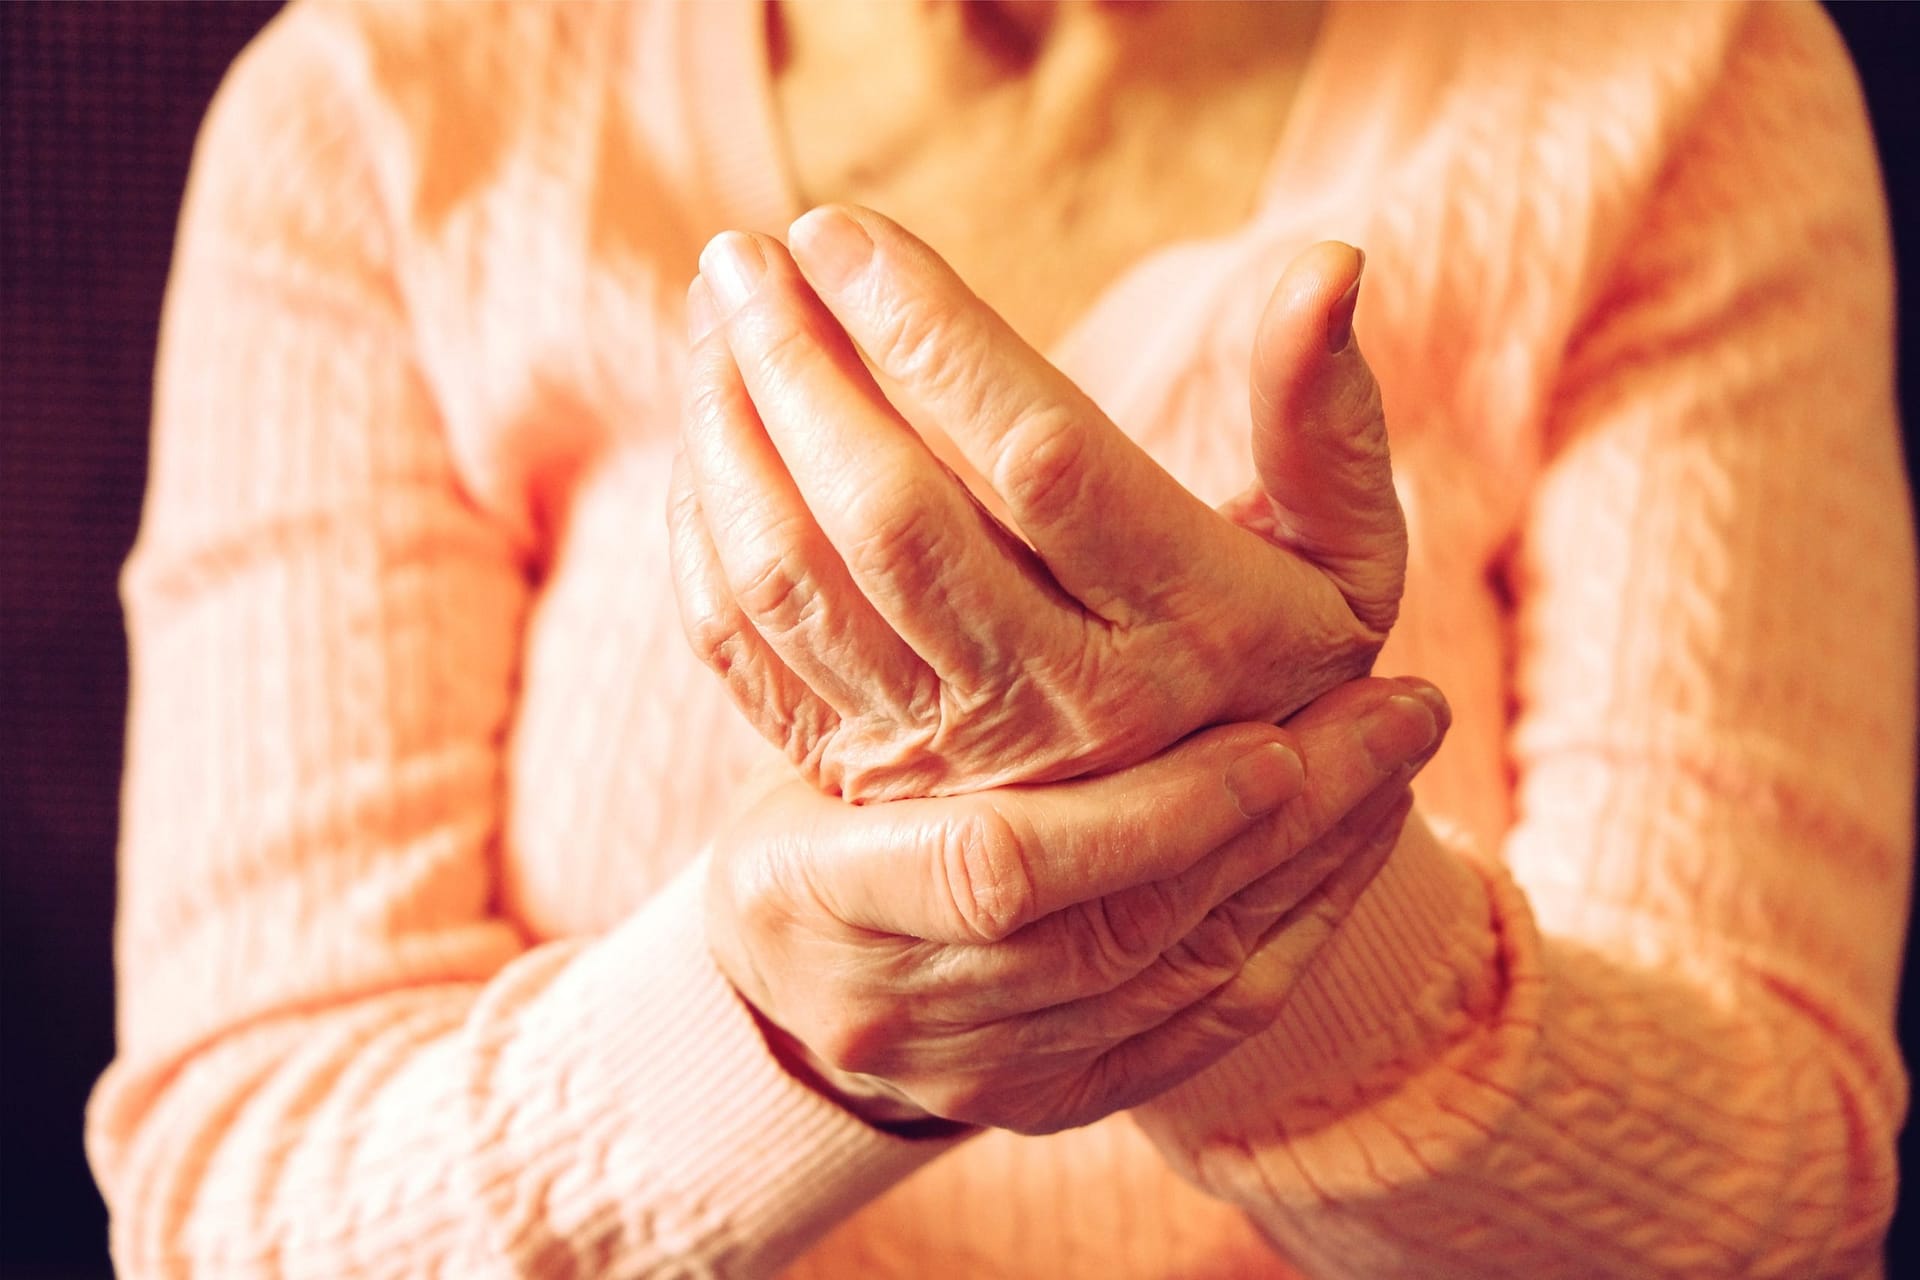 Common Causes of Finger Stiffness - The Orthopaedic Institute